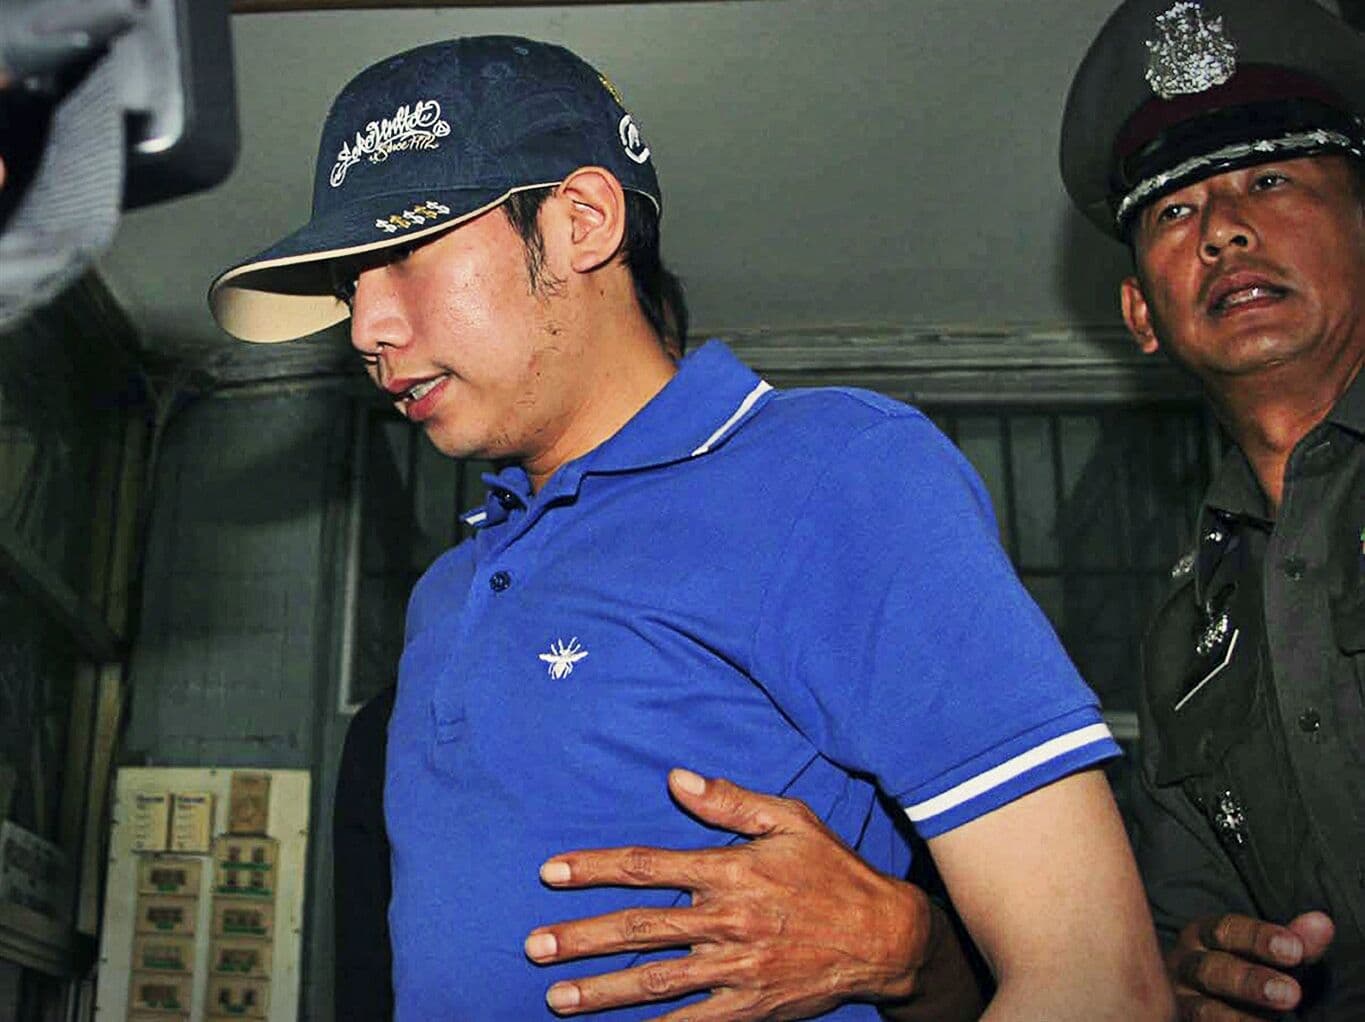 Полиция Таиланда оказалась бессильна в розыске Босса из "Red Bull", убившего копа.